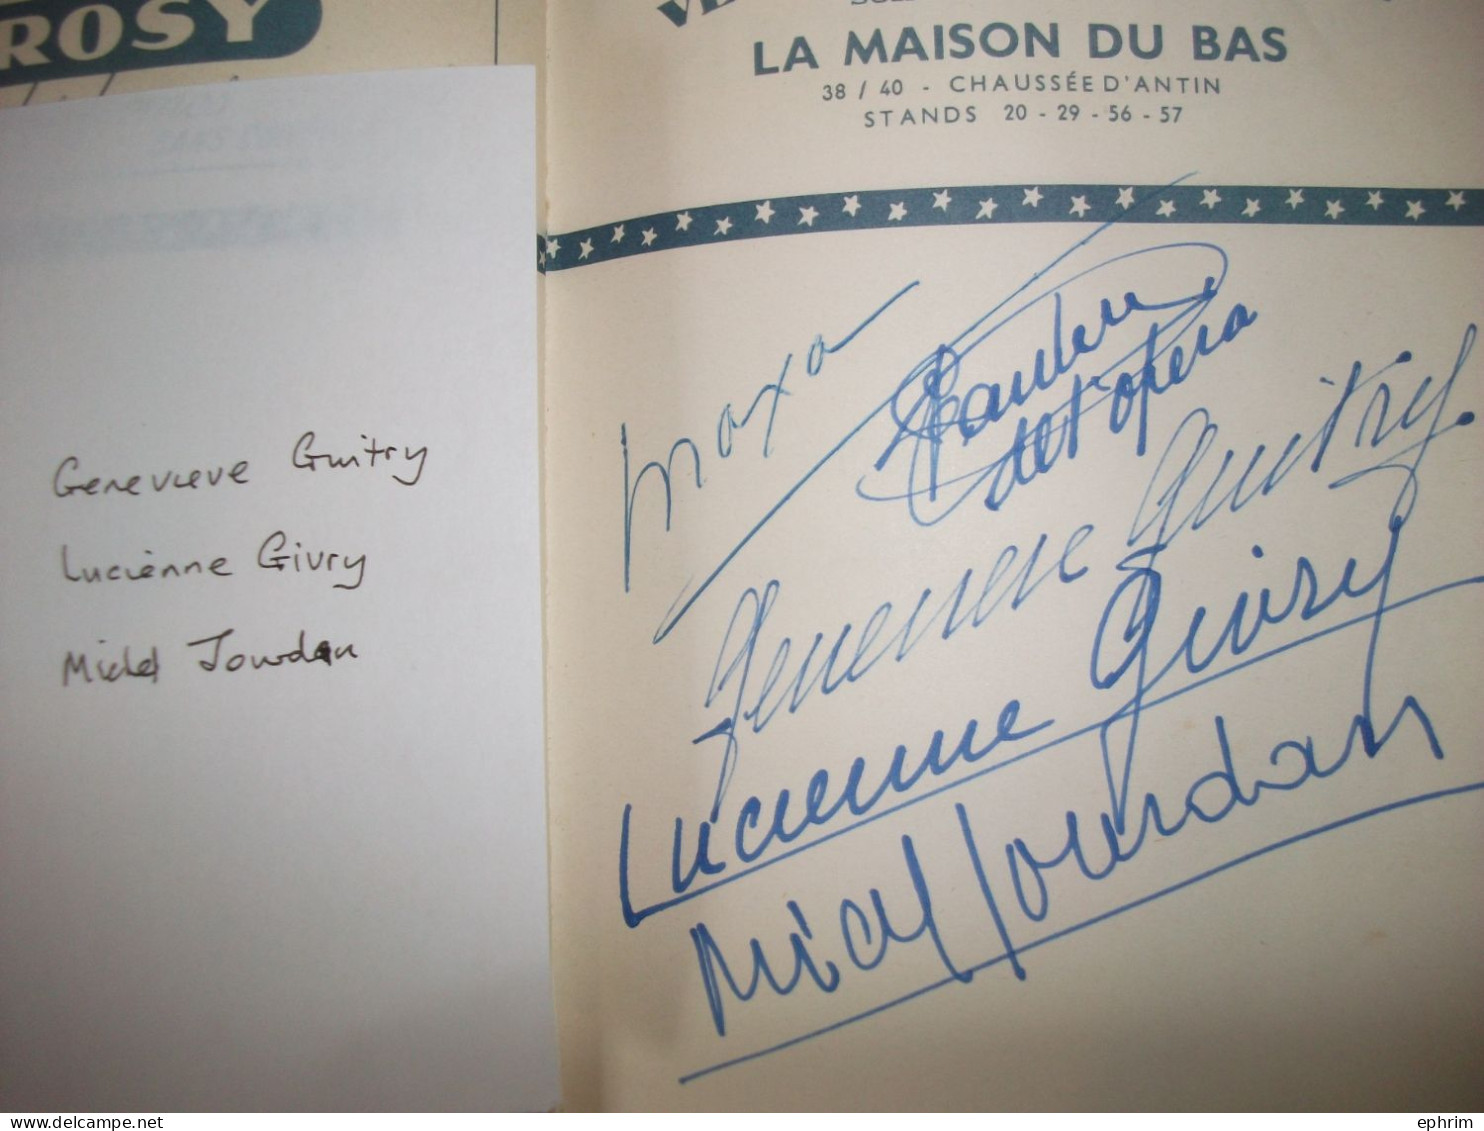 La Kermesse aux Etoiles 1950 Carnet d'Autographes Autographe Acteur Stan Laurel Serge Reggiani Lucy May Veronica Bell...